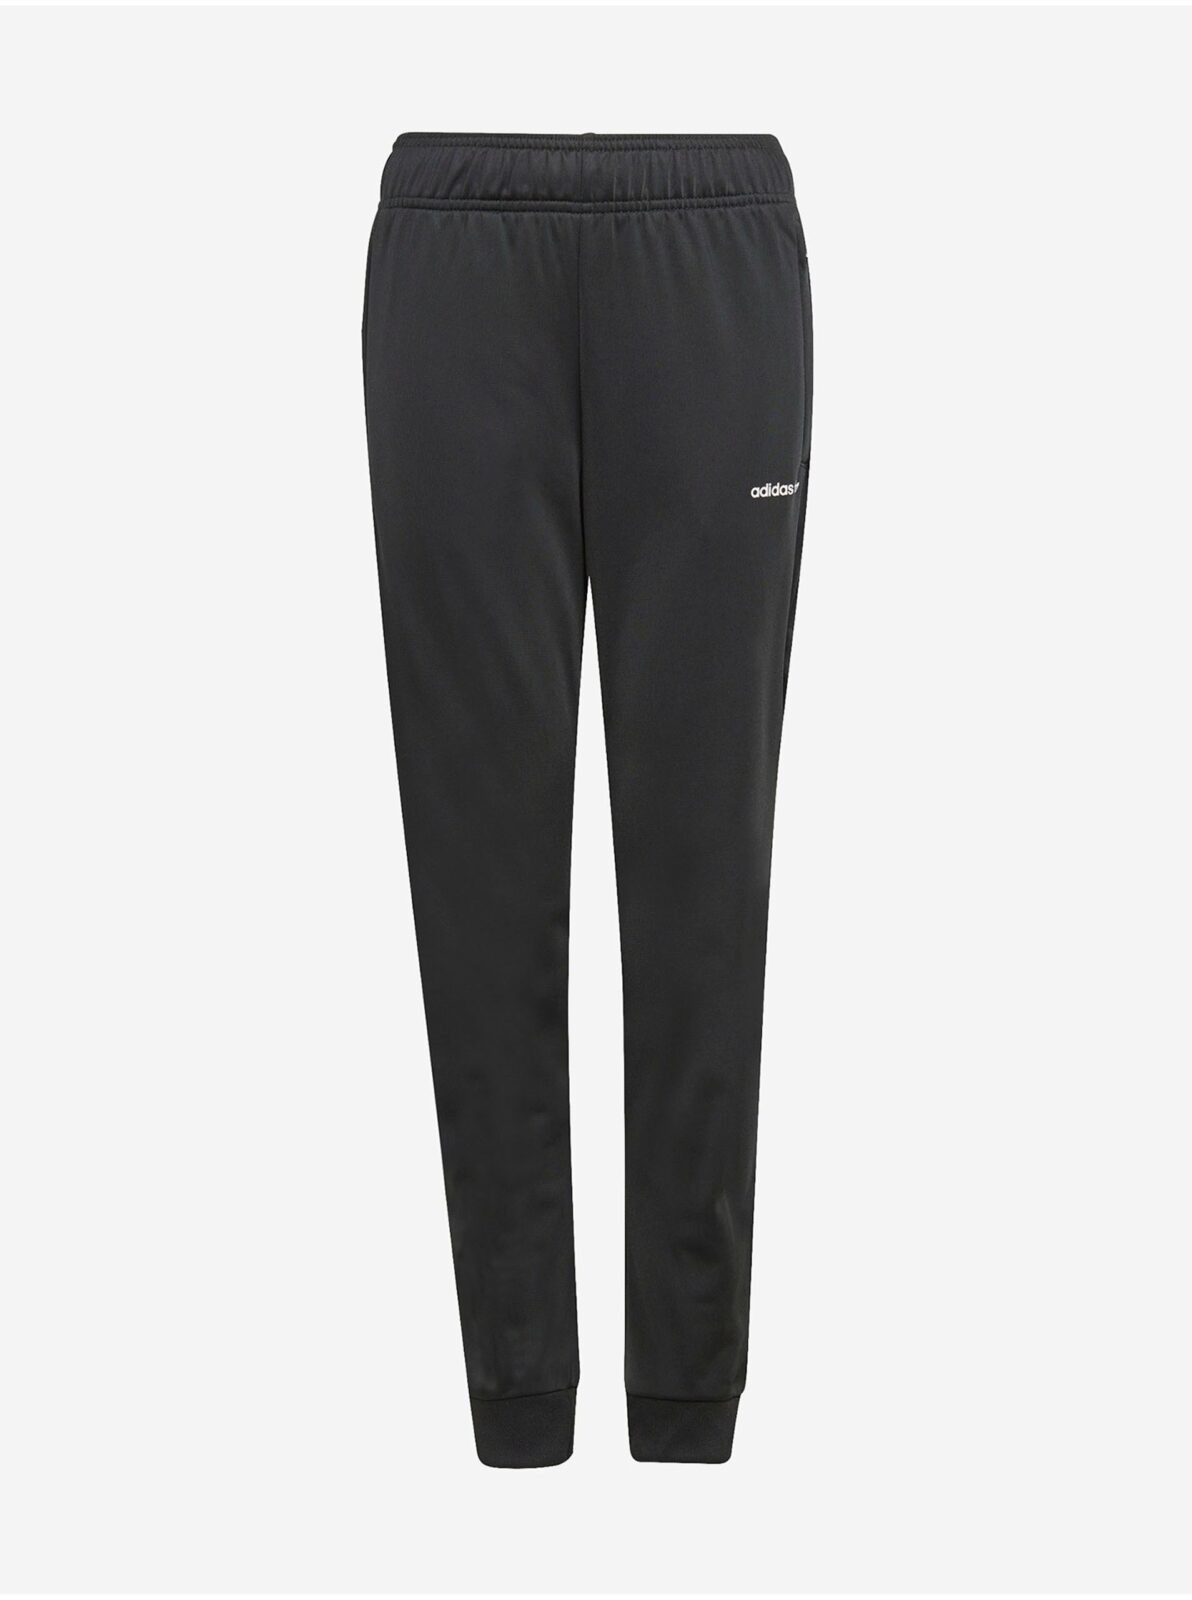 Černé holčičí tepláky s kapsami na zip adidas Originals Track Pants -